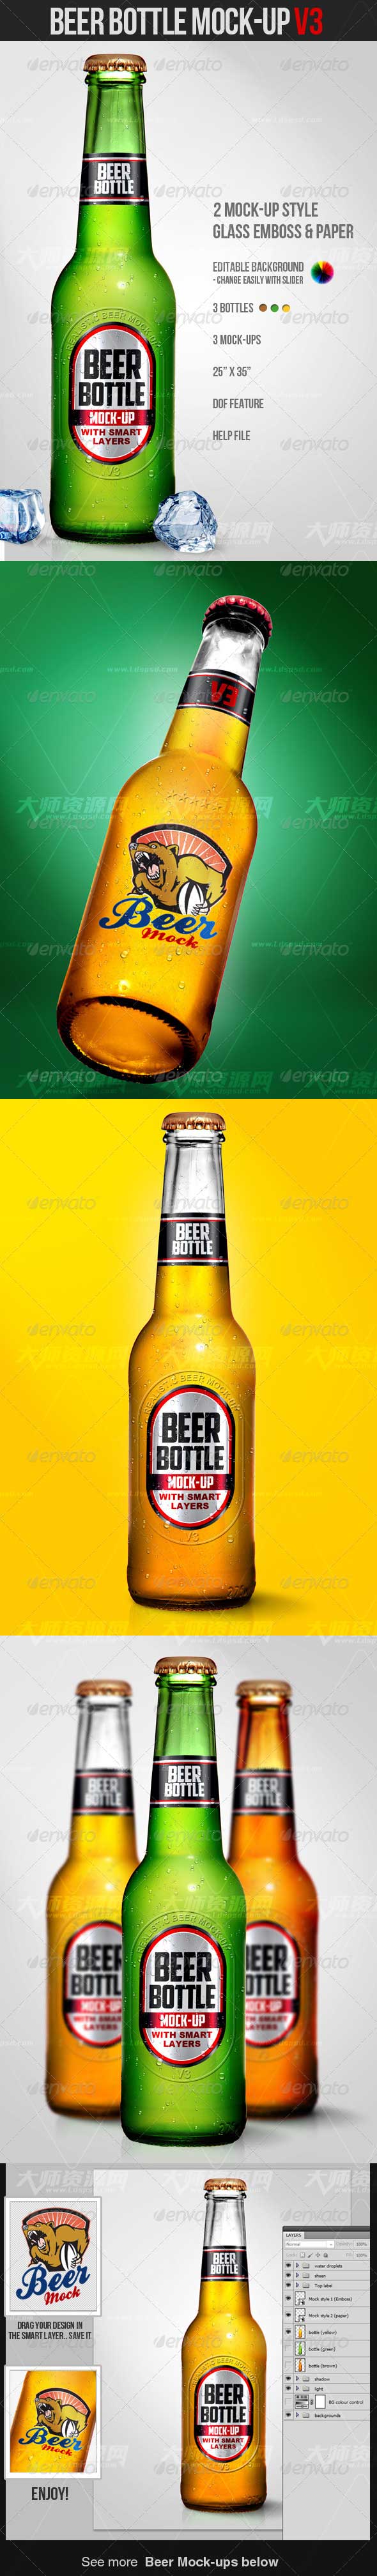 Beer Bottle Mock-up V3,啤酒瓶品牌标签展示模型(第三套)